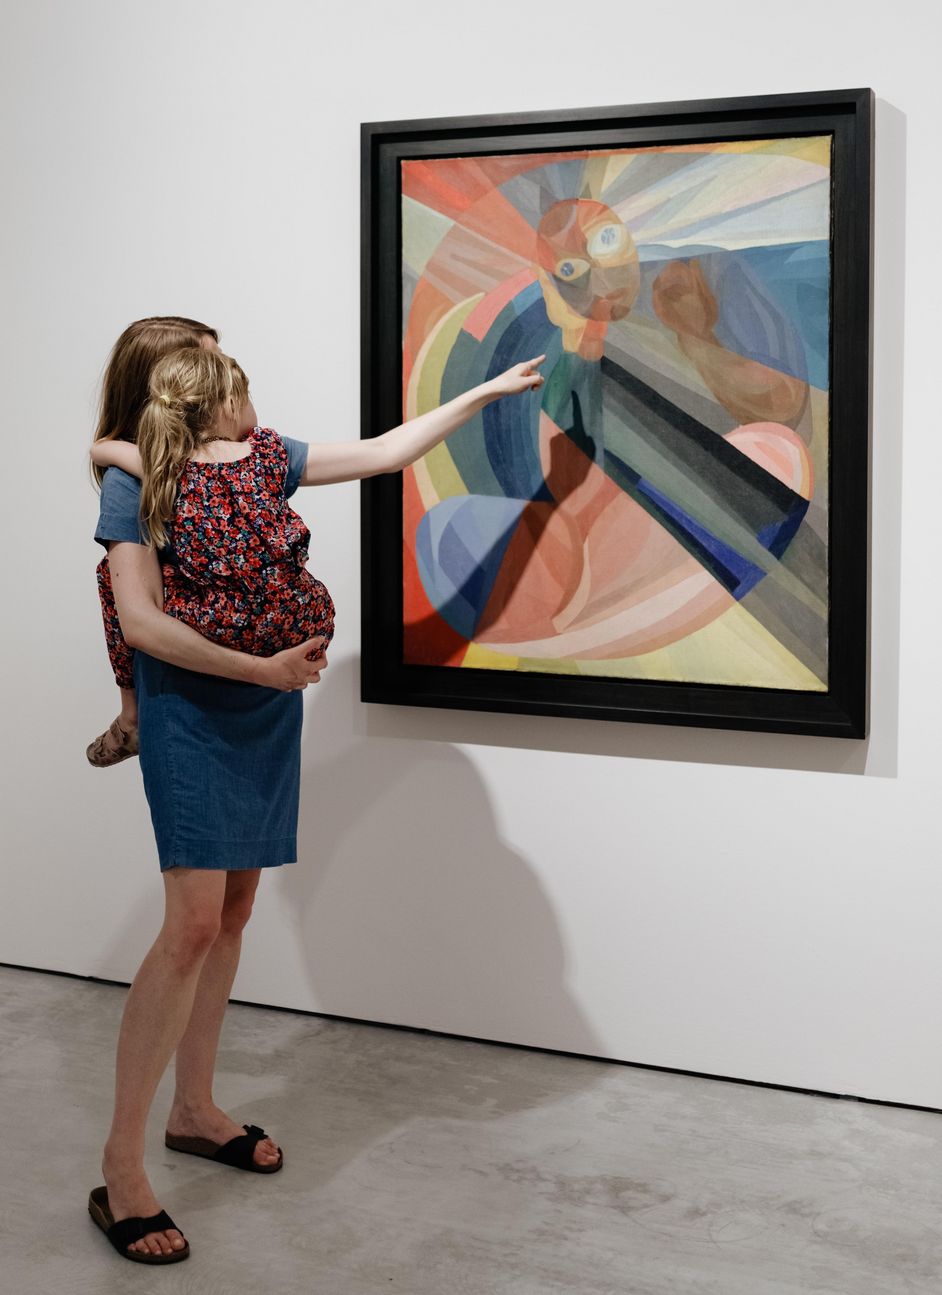 Frau mit Kind auf dem Arm im Museum